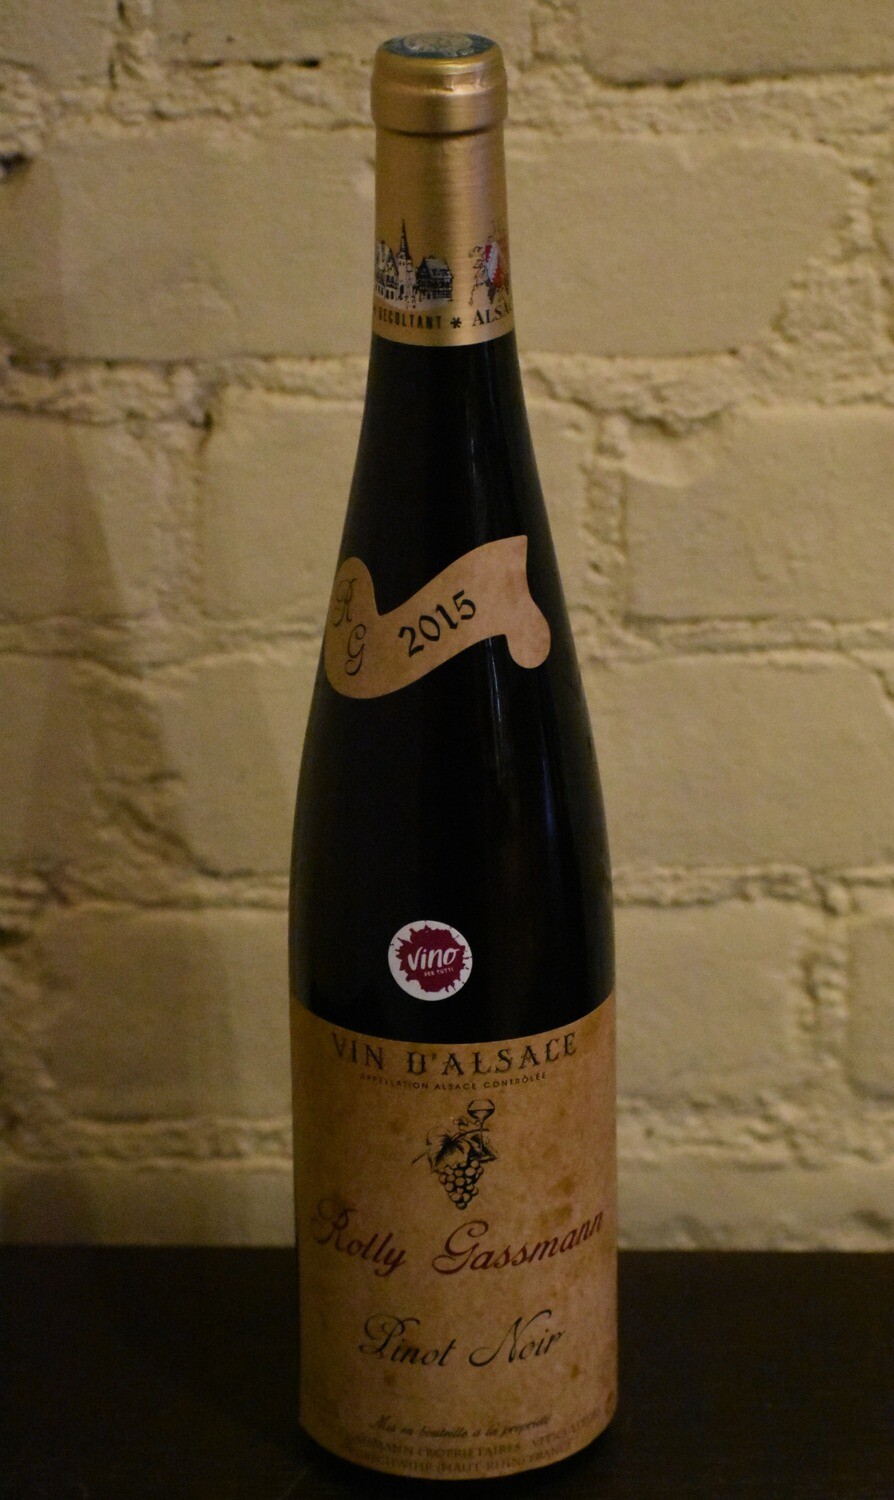 Rolly Gassmann Pinot Noir